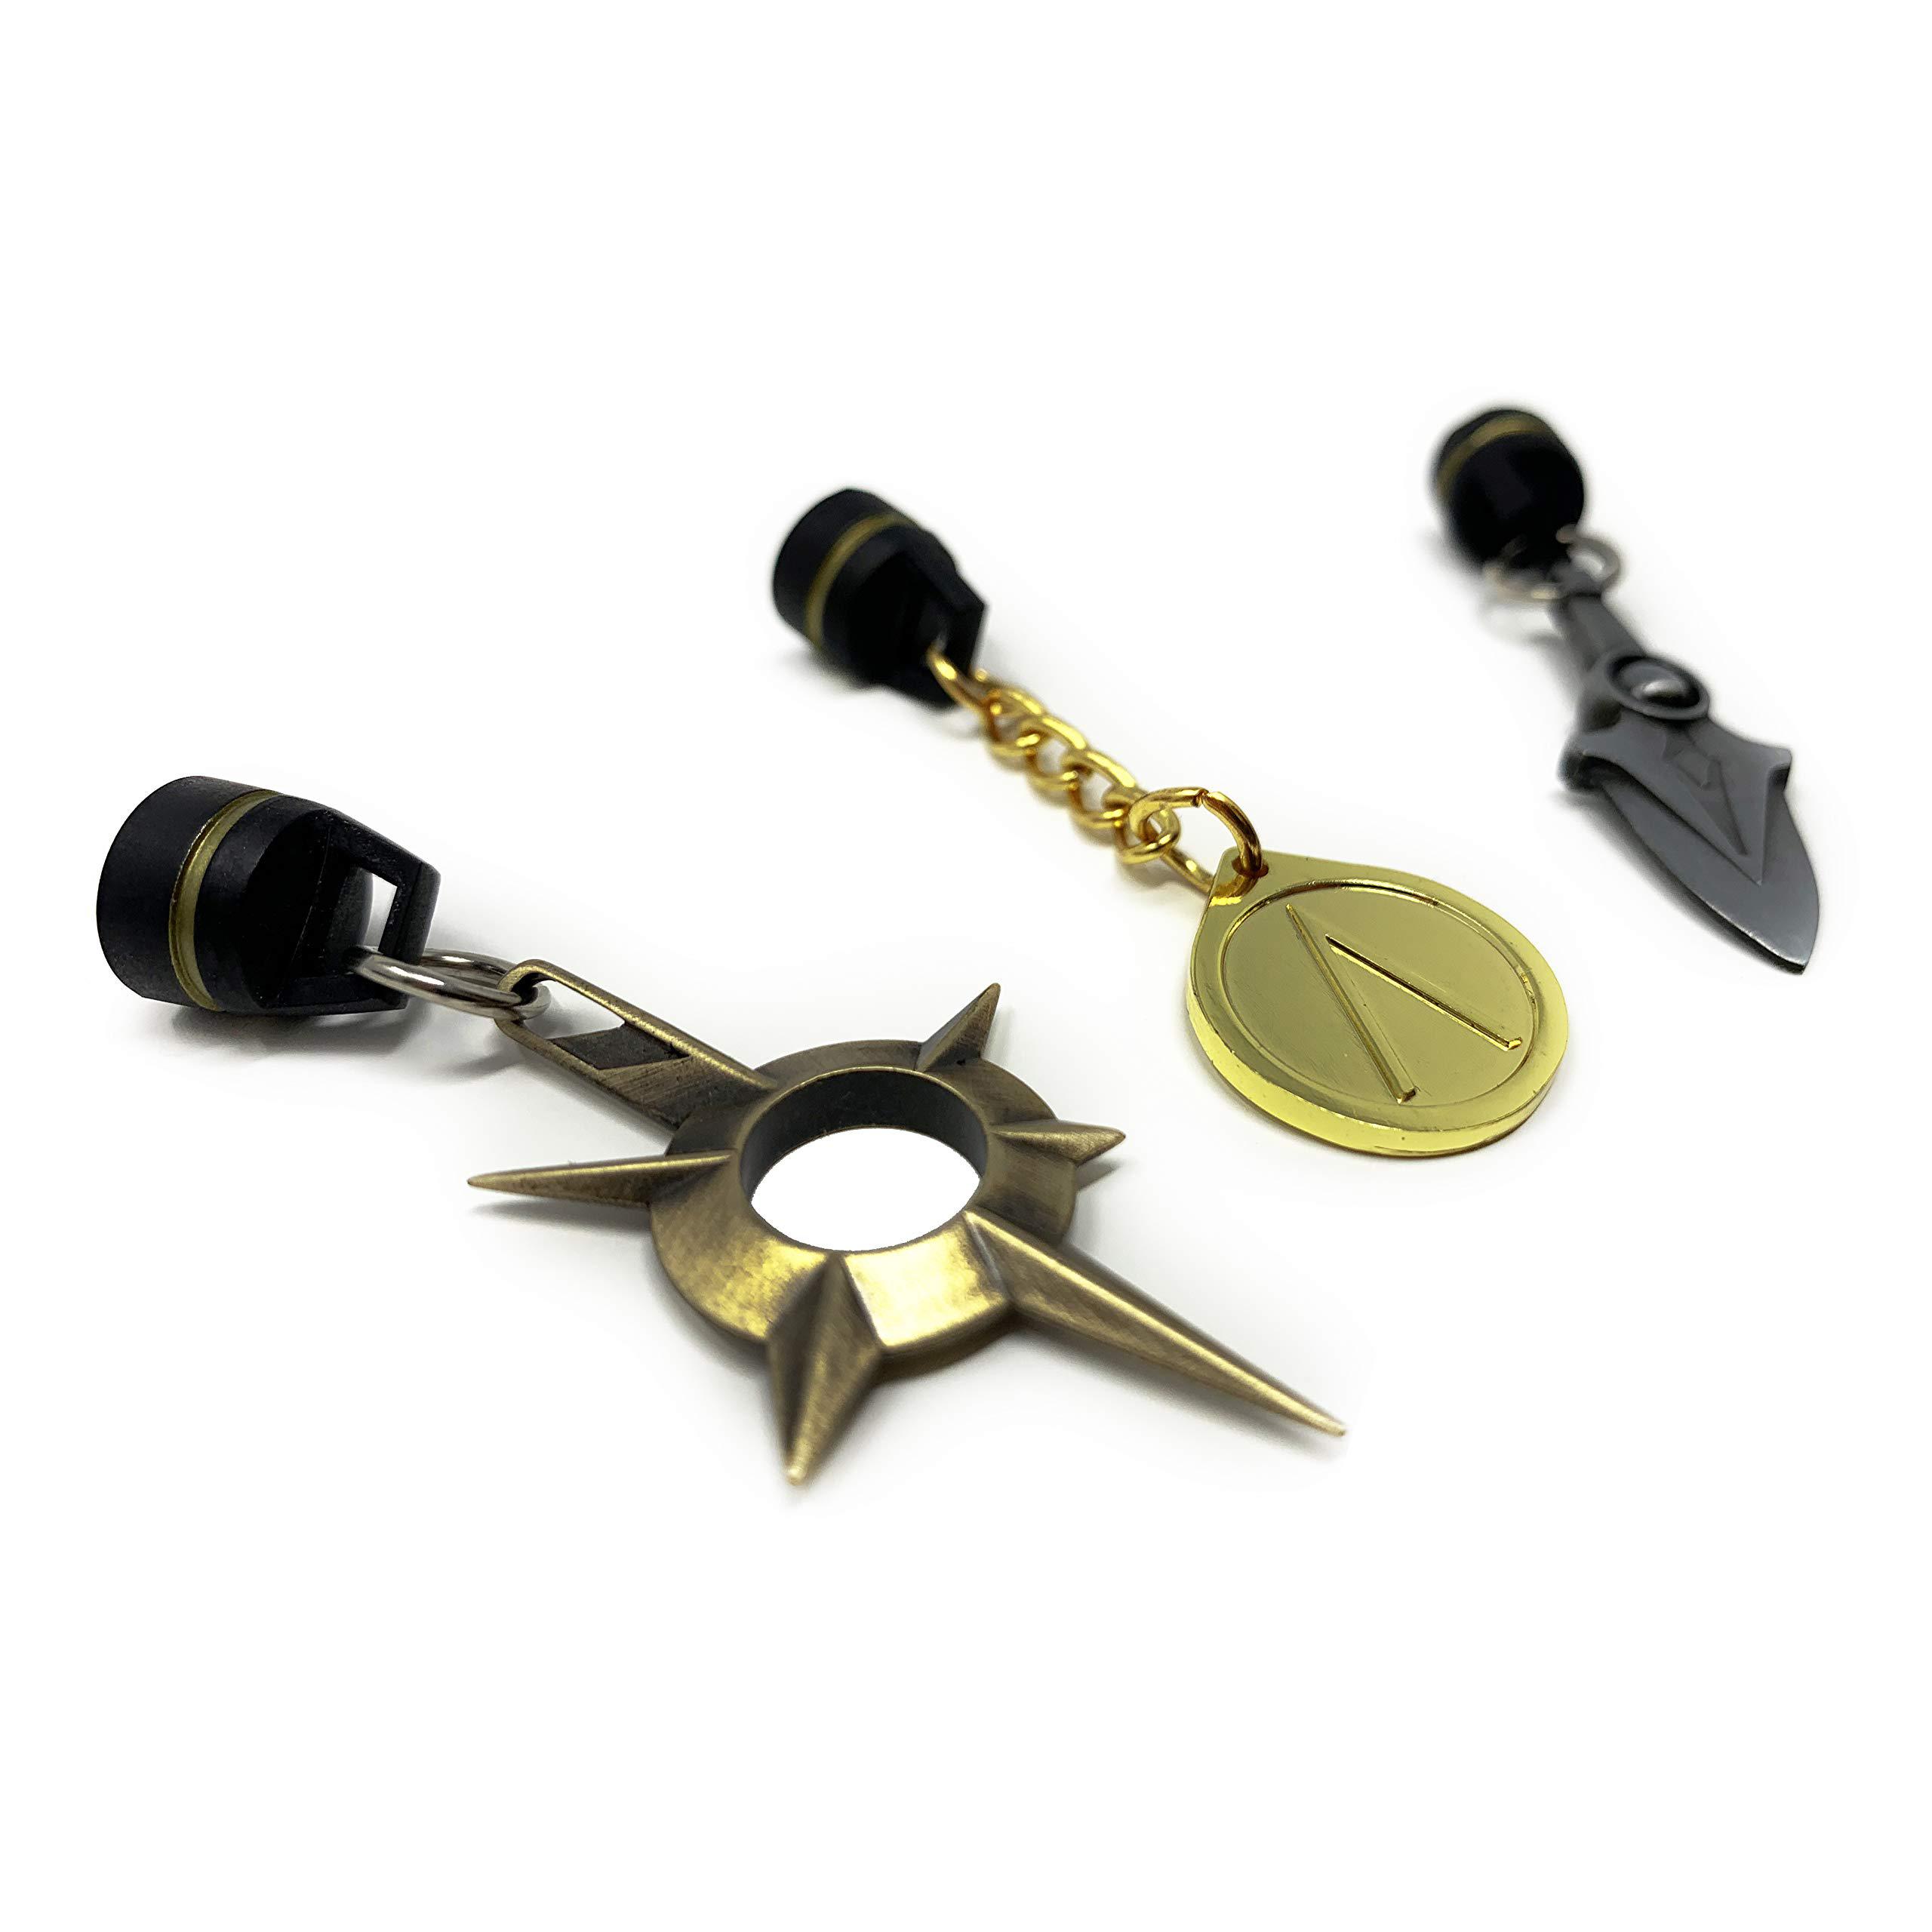 citadel black mini desktop buddy - 3 pack - magnetic metal gaming accessory with drawstring bag, mini video game pendant, str